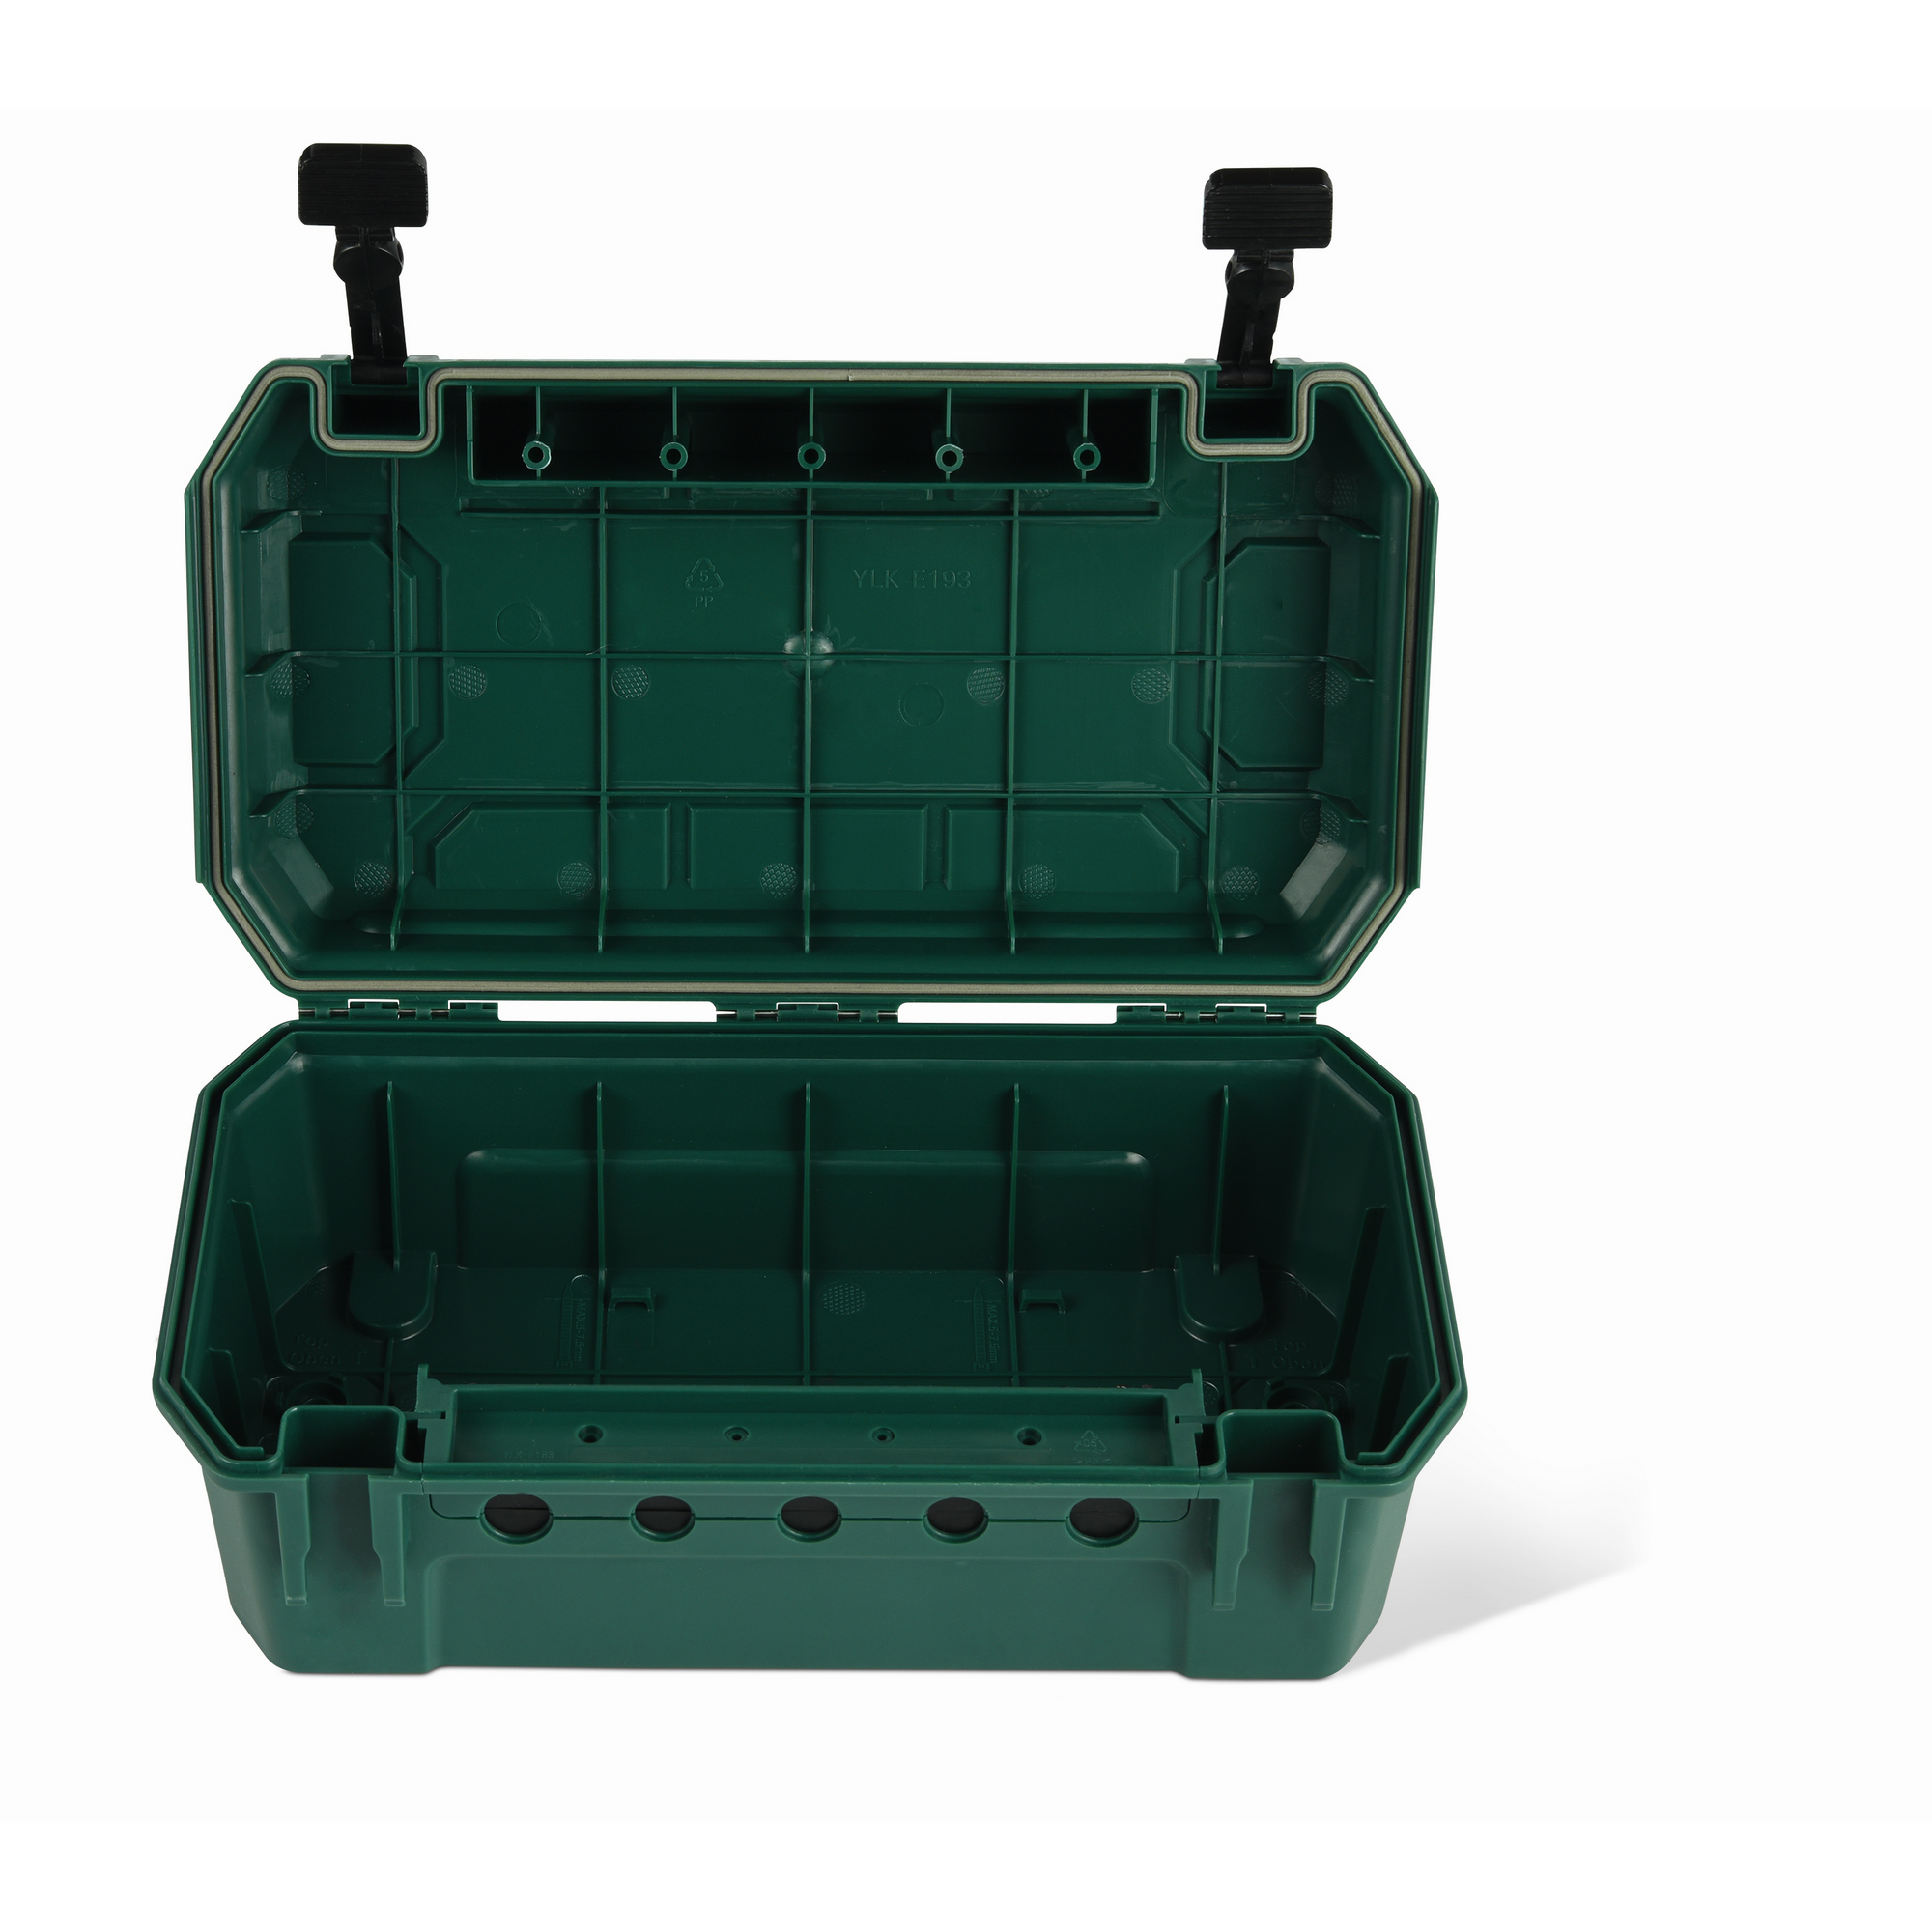 Sicherheitskabelbox 5-fach Kunststoff grün 39 x 23 x 14 + product picture